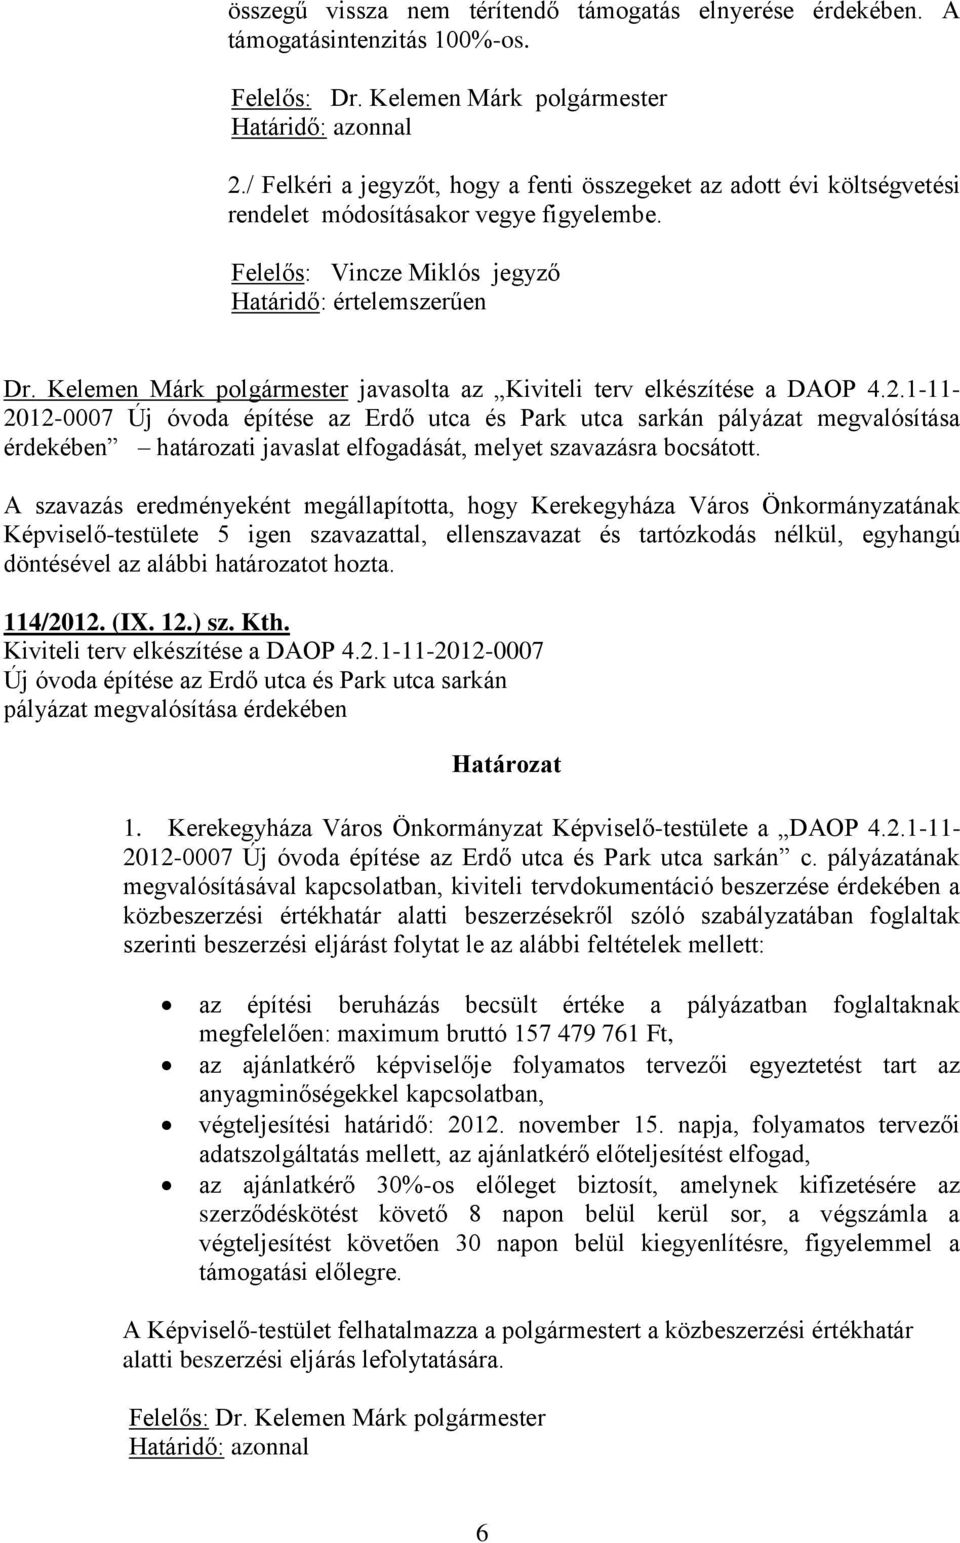 Kelemen Márk polgármester javasolta az Kiviteli terv elkészítése a DAOP 4.2.